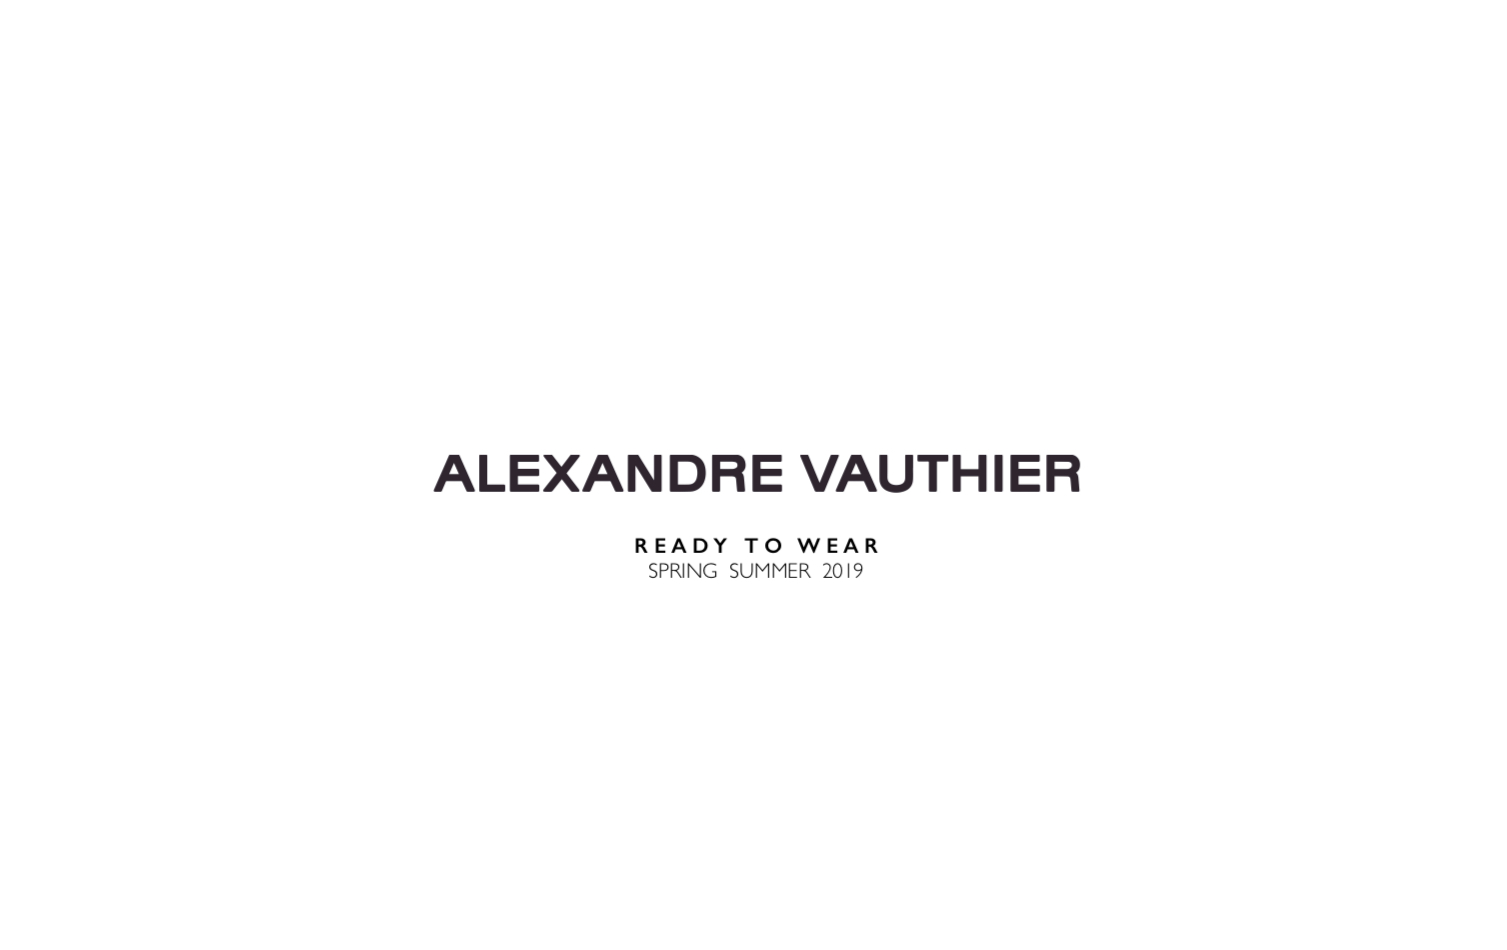 Alexandre Vauthier ou celui qui permet une féminité indomptable